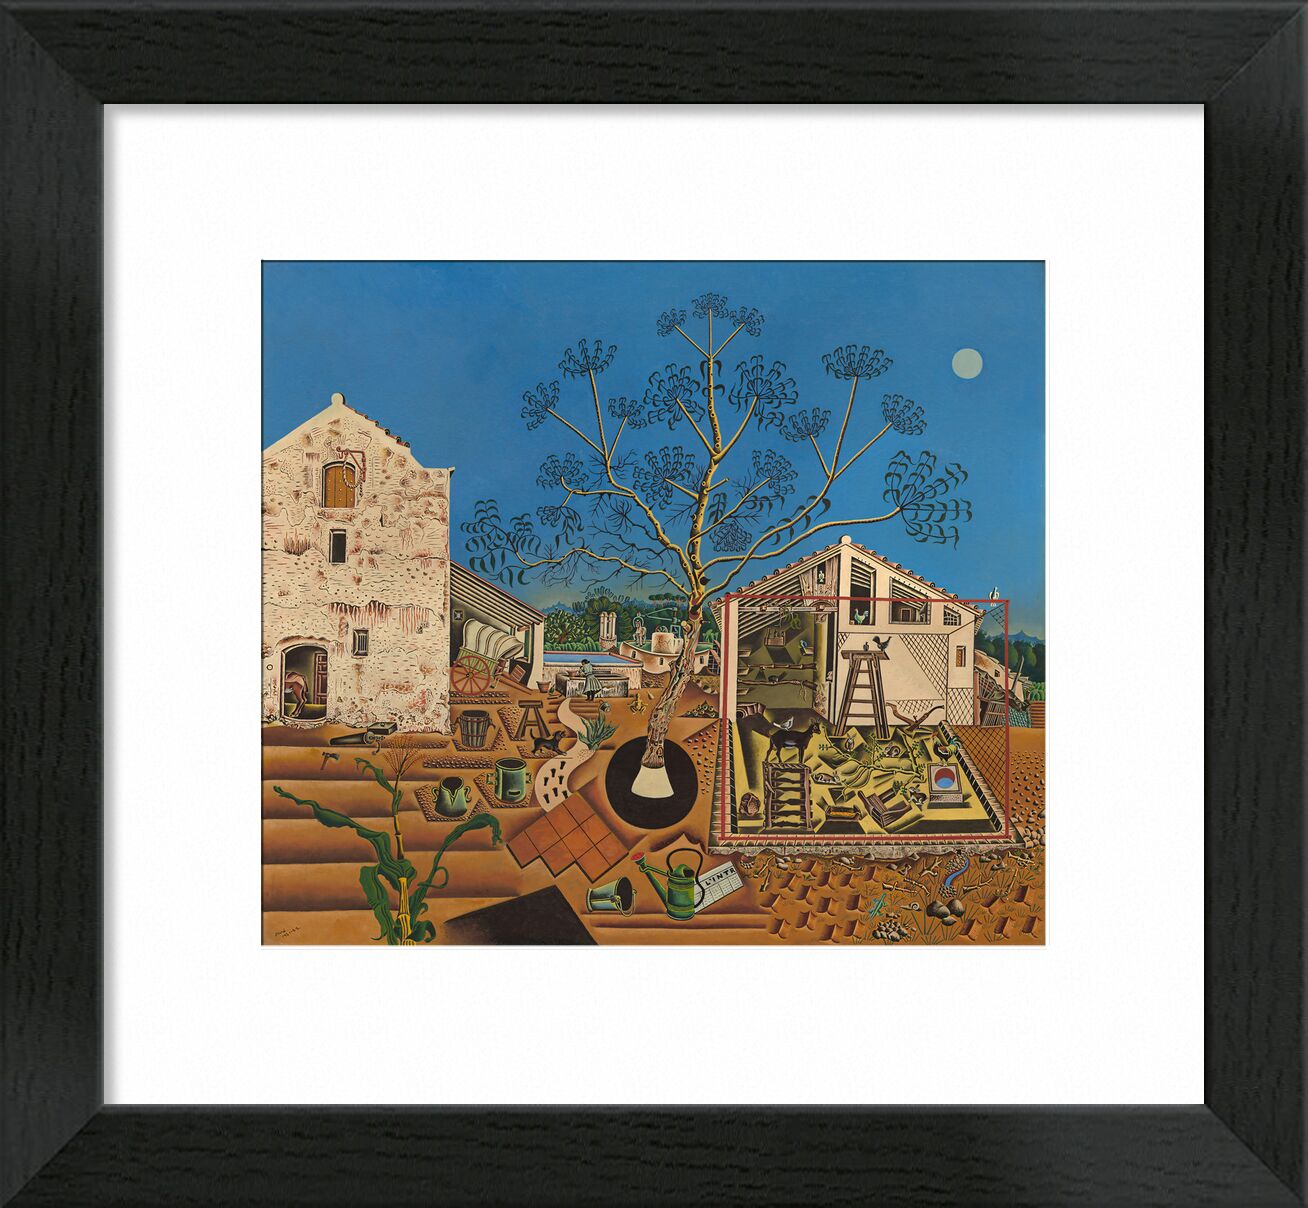 Der Bauernhof von Bildende Kunst, Prodi Art, Kultur, Bauernhof, Joan Miró, Miro, Bauern, Felder